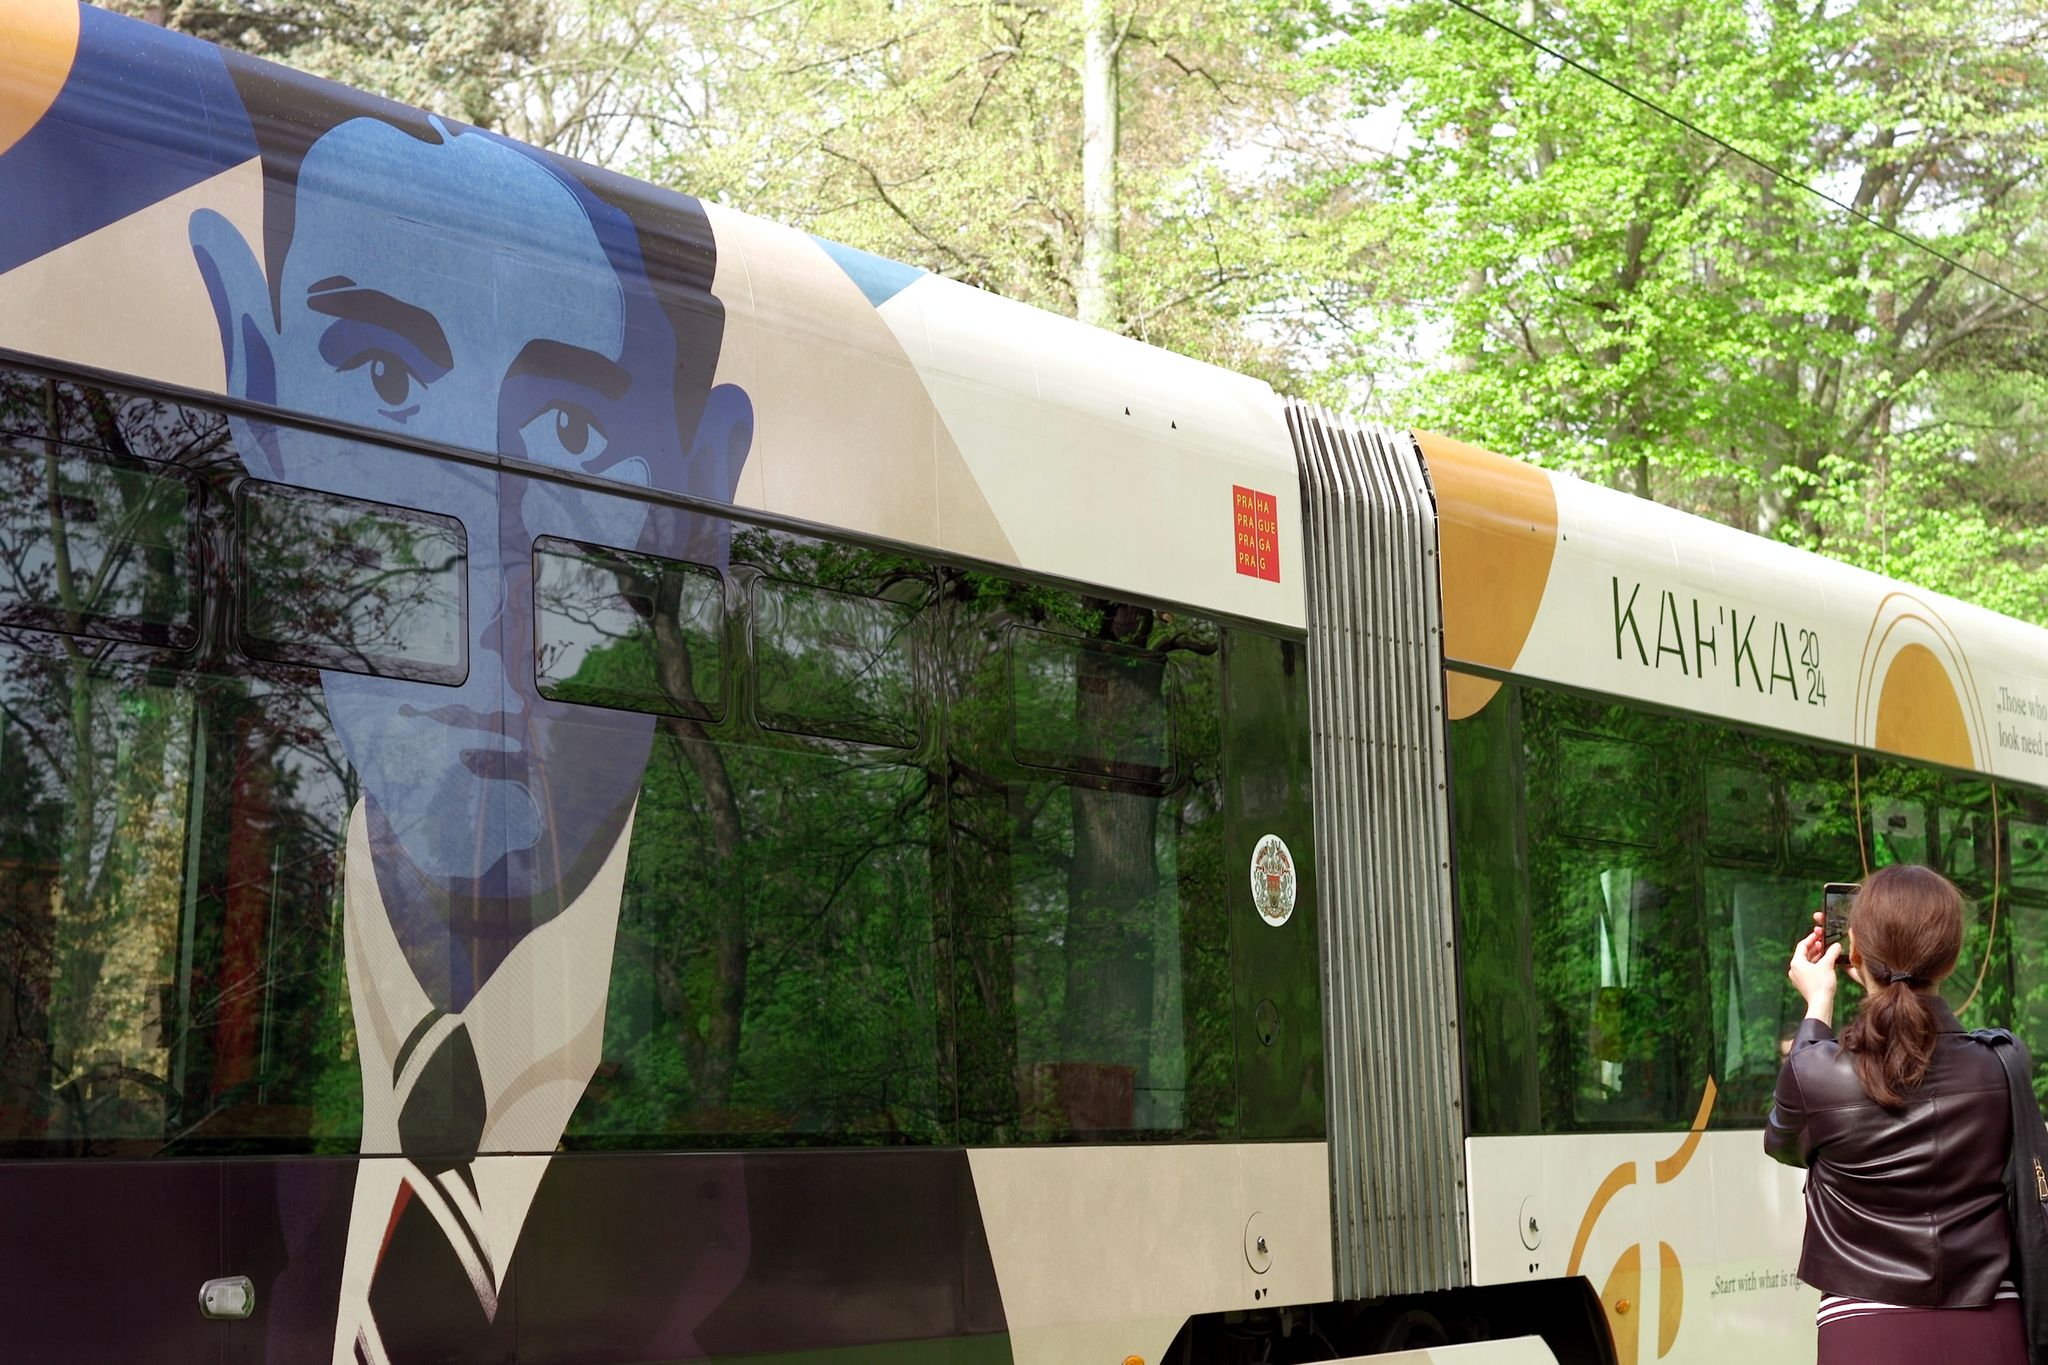 In Prag erinnert diese neugestaltete Straßenbahn an den deutschsprachigen Schriftsteller Franz Kafka. Foto: Michael Heitmann/dpa